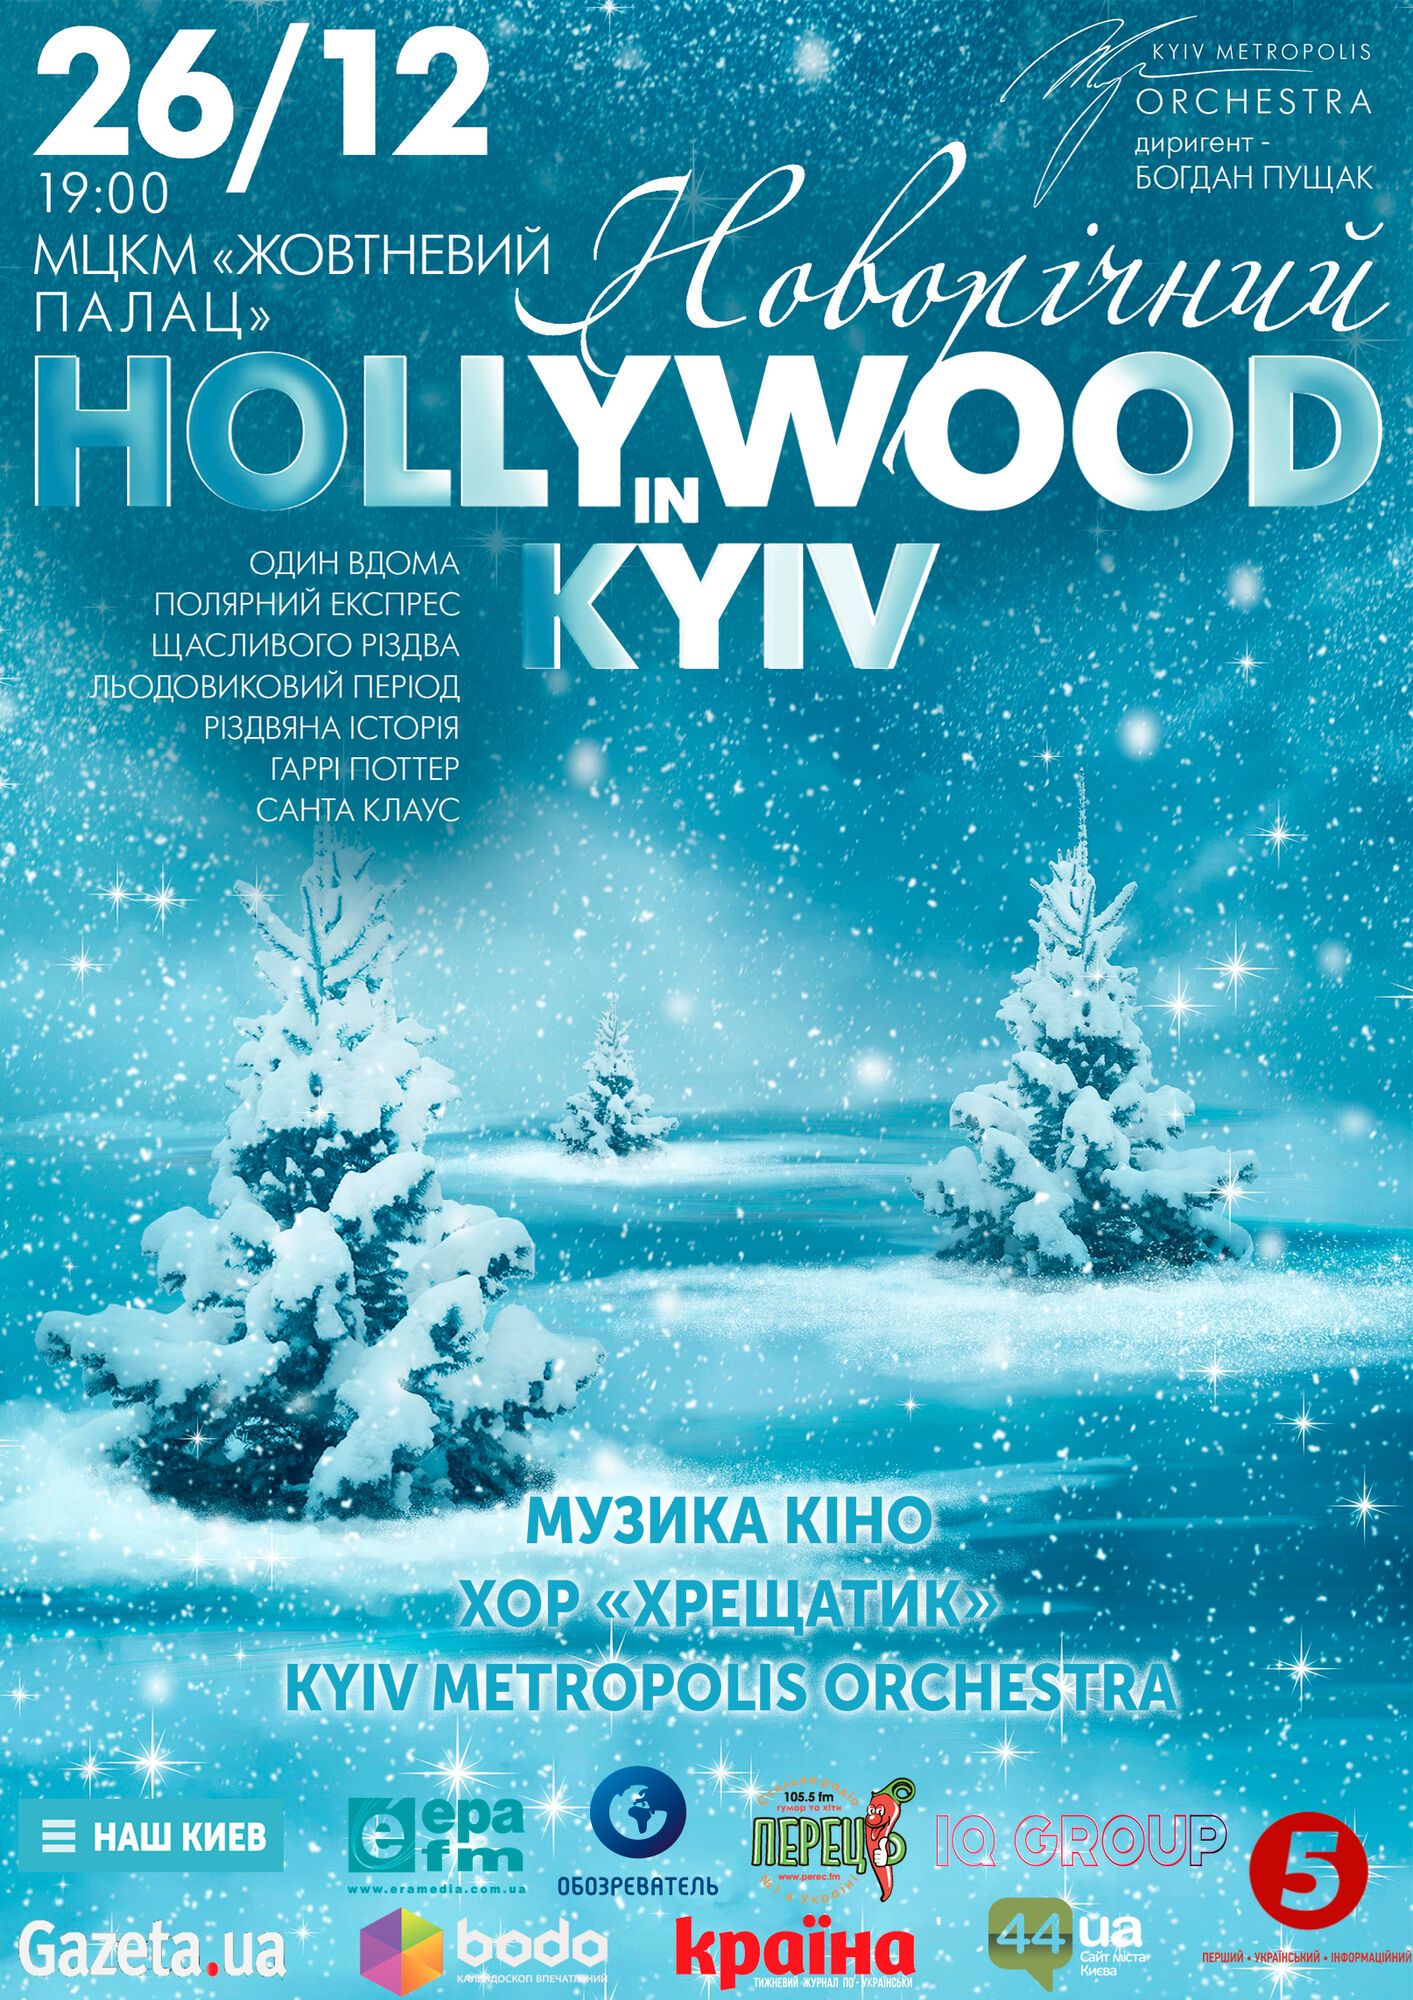 Музыку из захватывающих рождественских фильмов в Киеве исполнит хор и симфонический оркестр 